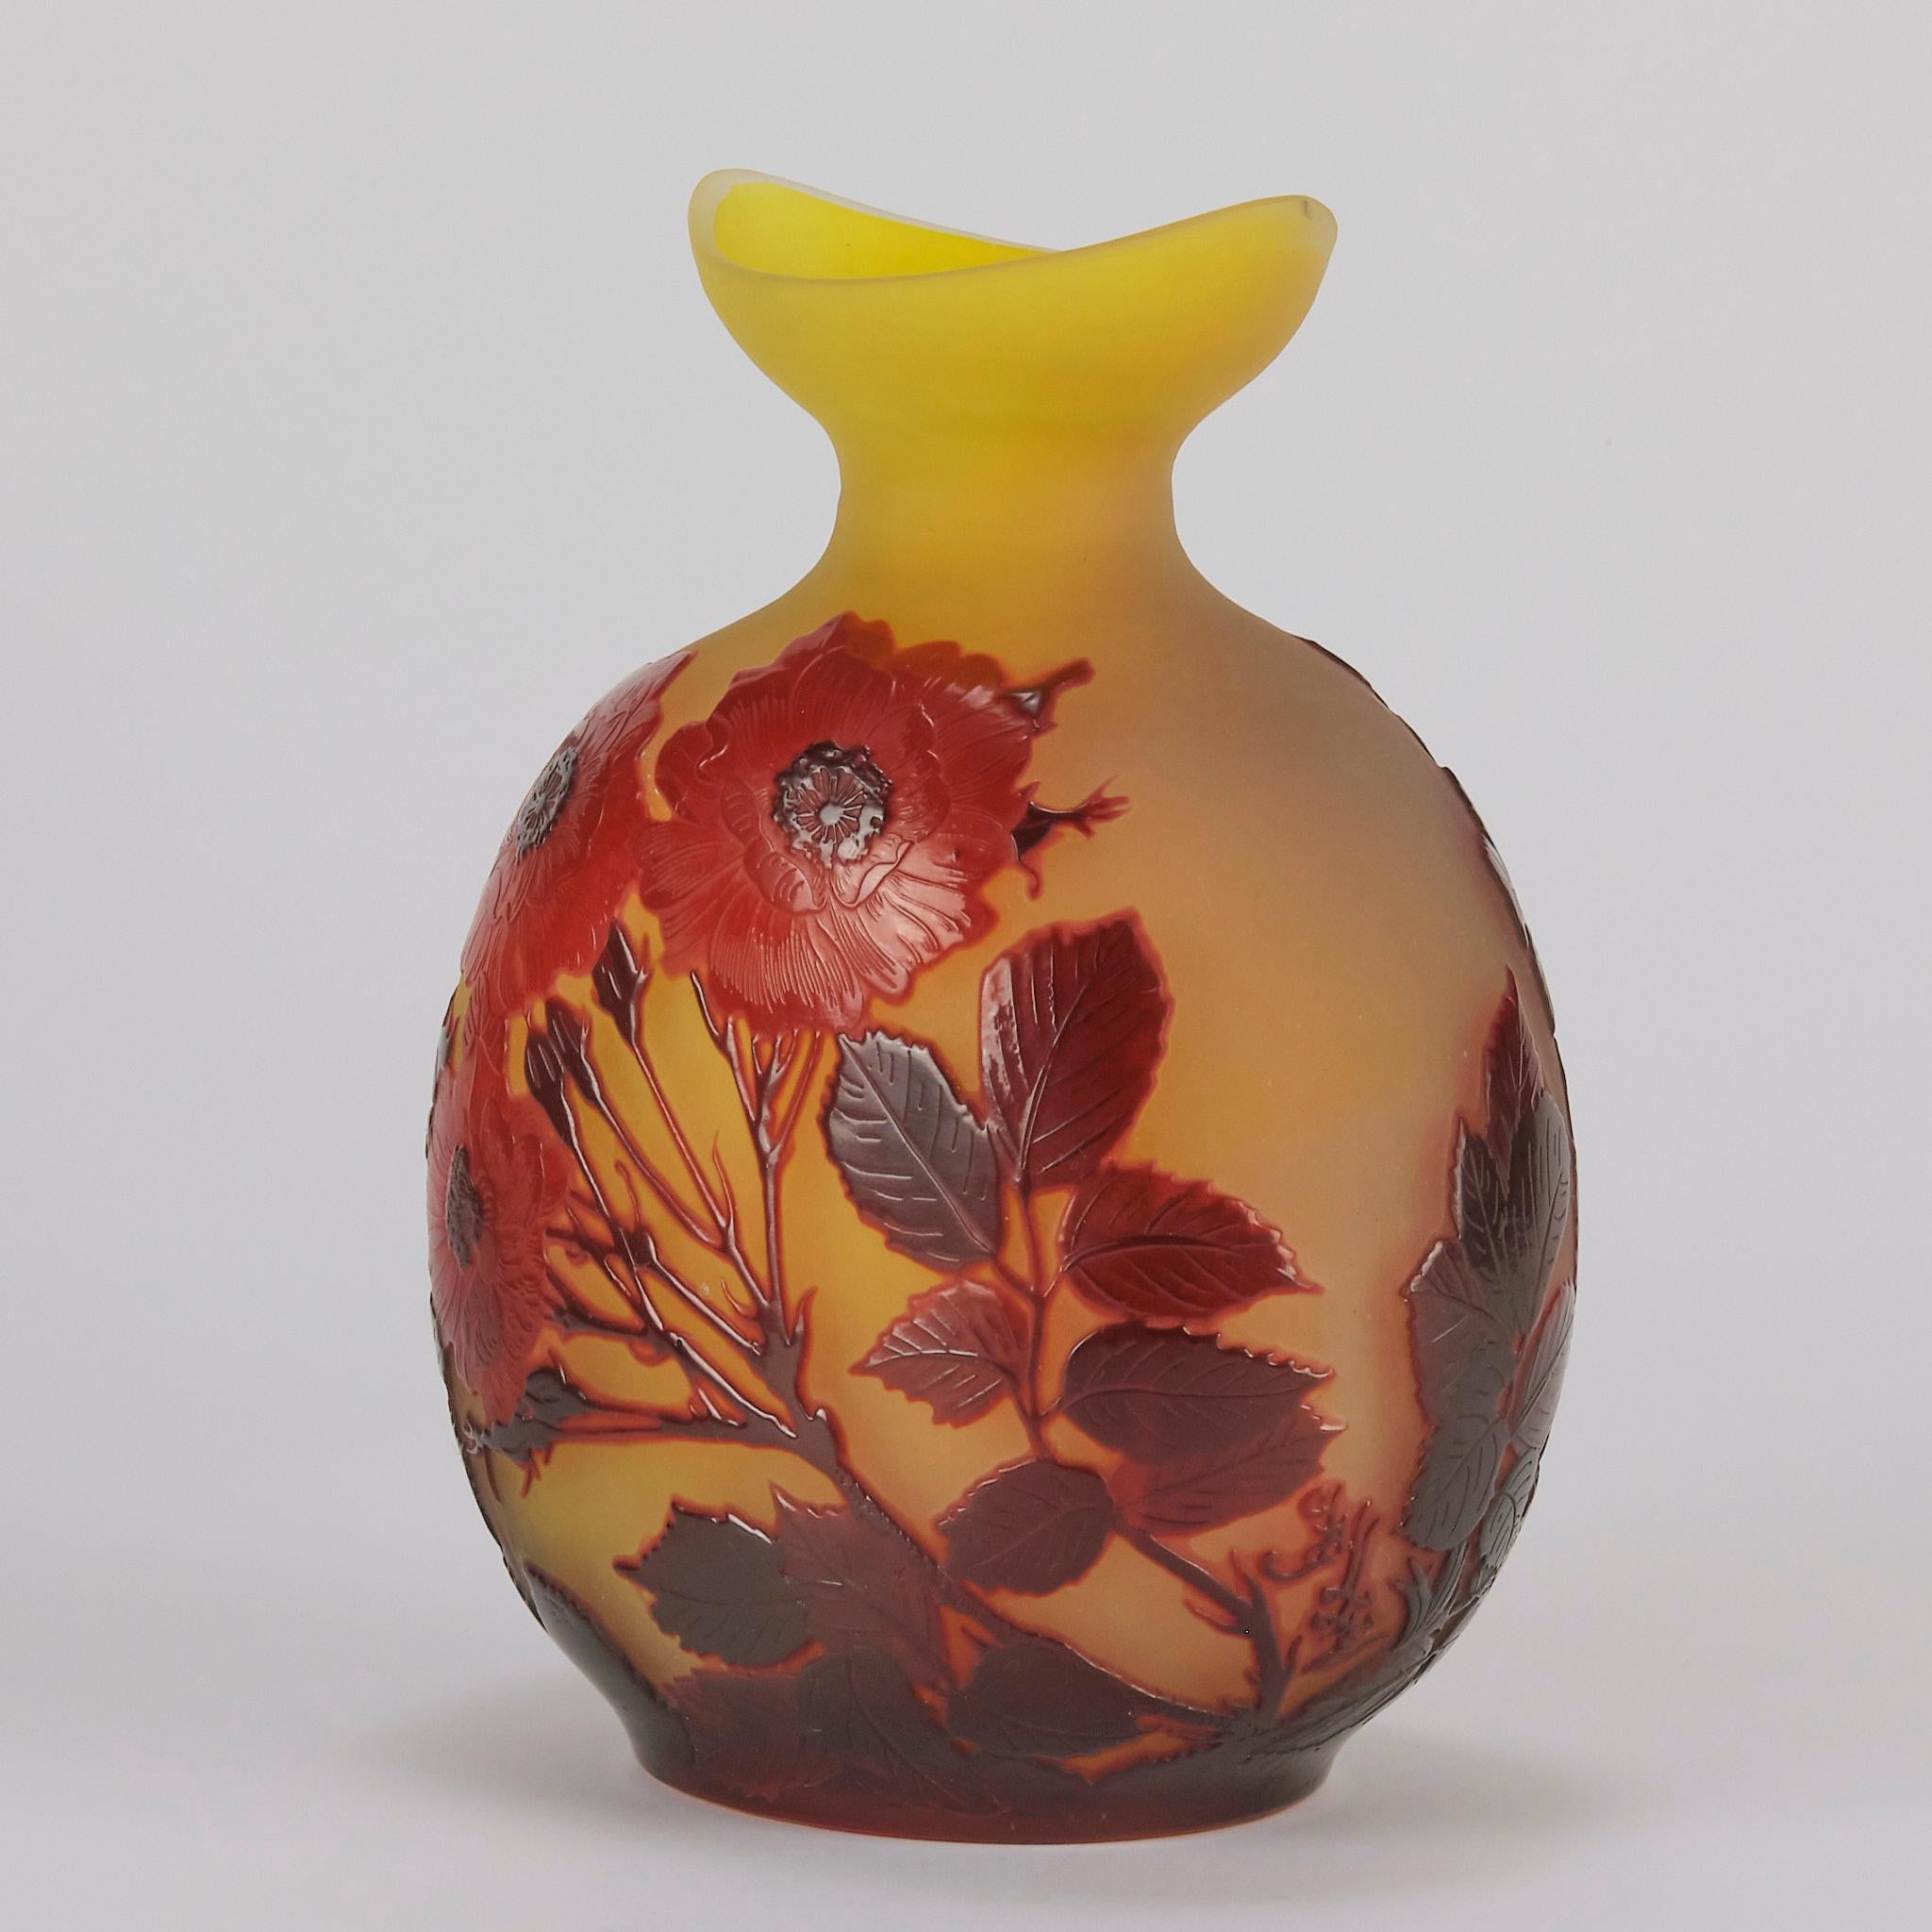 Un beau vase en verre camée du début du 20e siècle, taillé à l'acide et gravé d'une décoration florale rouge profond sur fond jaune. Avec un croissant de lune à l'ouverture du vase. Présentant de très beaux détails de surface finis à la main et des